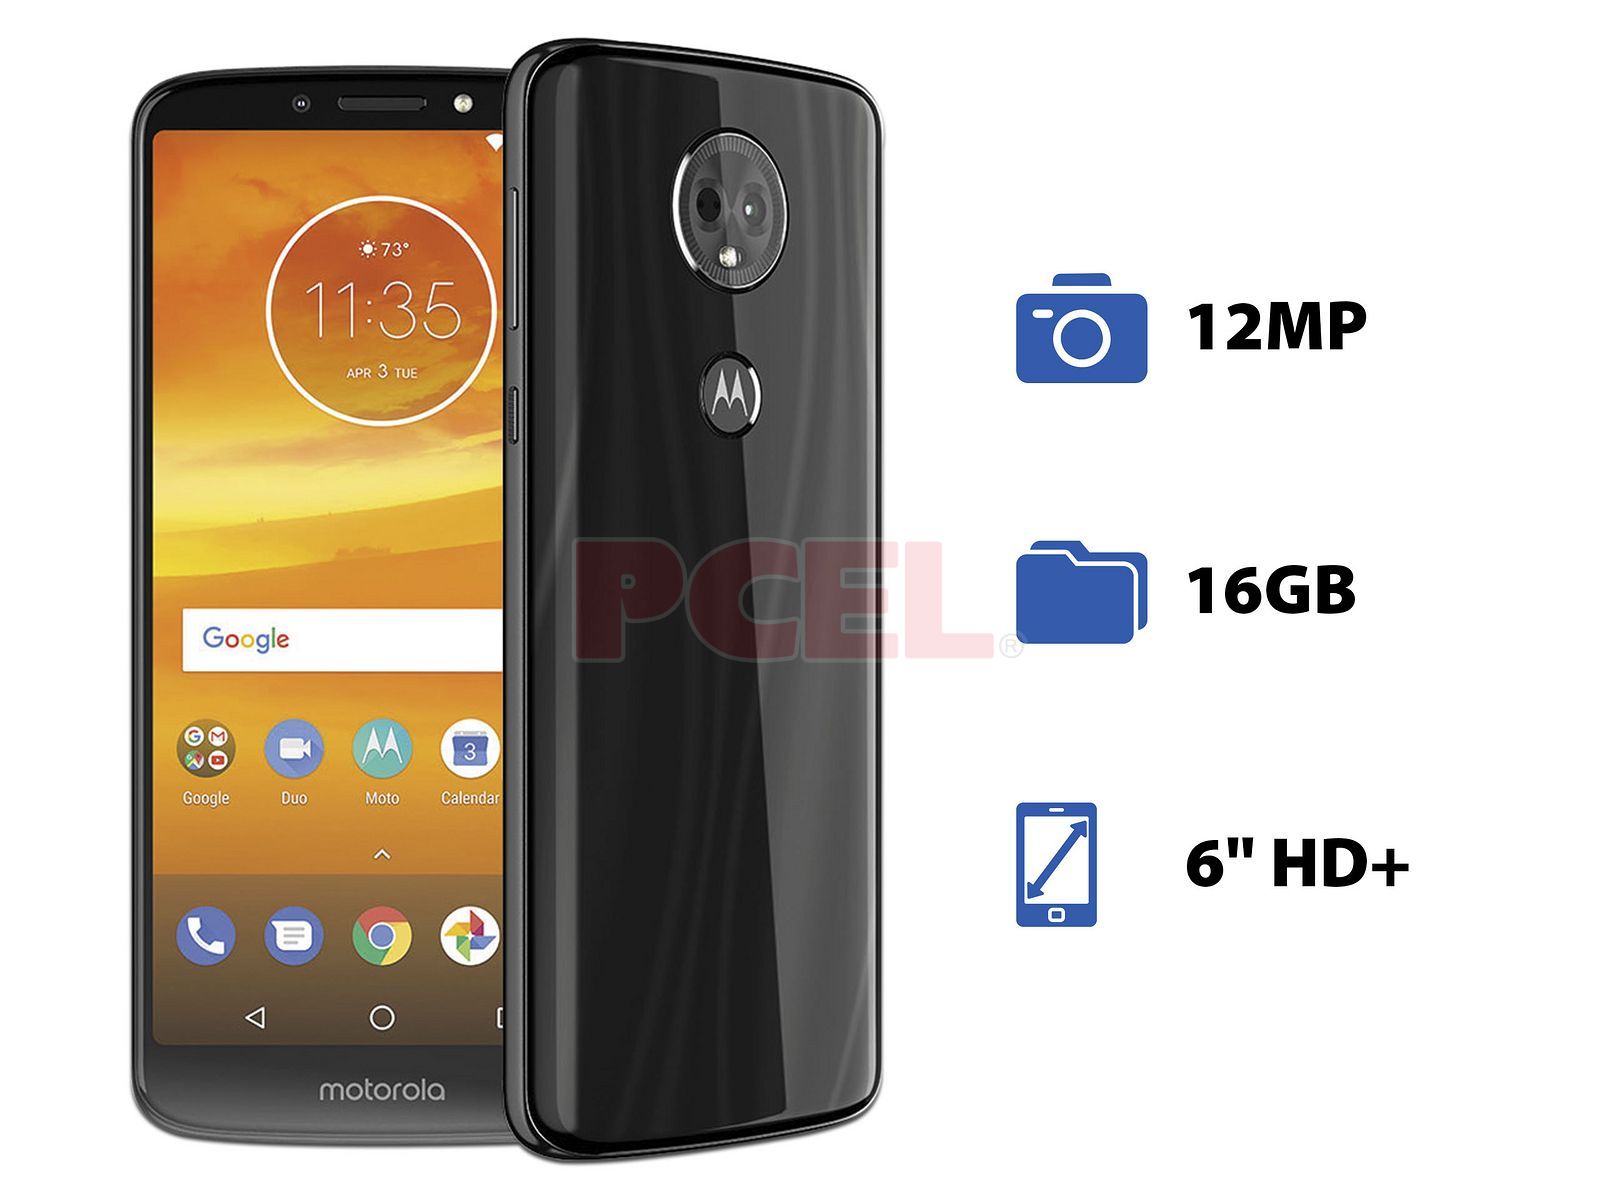 visie vorm Nieuwsgierigheid Smartphone Motorola Moto E5 Plus: Procesador Snapdragon 425 Quad Core (1.40  GHz), RAM de 2GB, Almacenamiento de 16GB (Expandible), Pantalla LED de 6"  HD+, Bluetooth 4.0, Wi-Fi, 4G, Nano SIM, Cámara principal